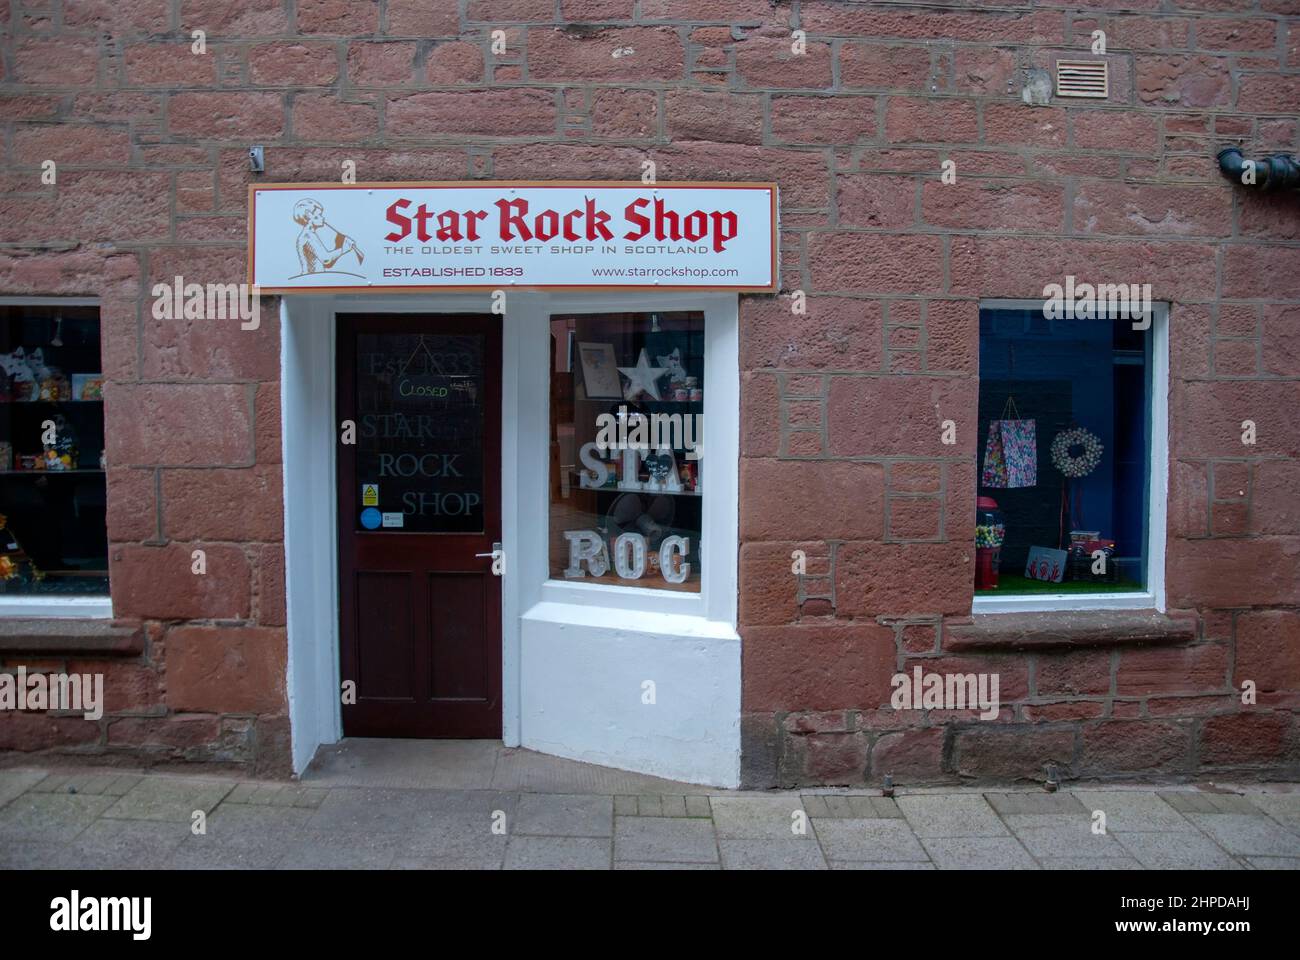 Star Rock Shop Oldest Sweet Shop in Scotland Roods Kirriemuir Angus Scotland Vereinigtes Königreich Außenansicht 19th Jahrhundert roter Sandstein Doppelfront CO Stockfoto